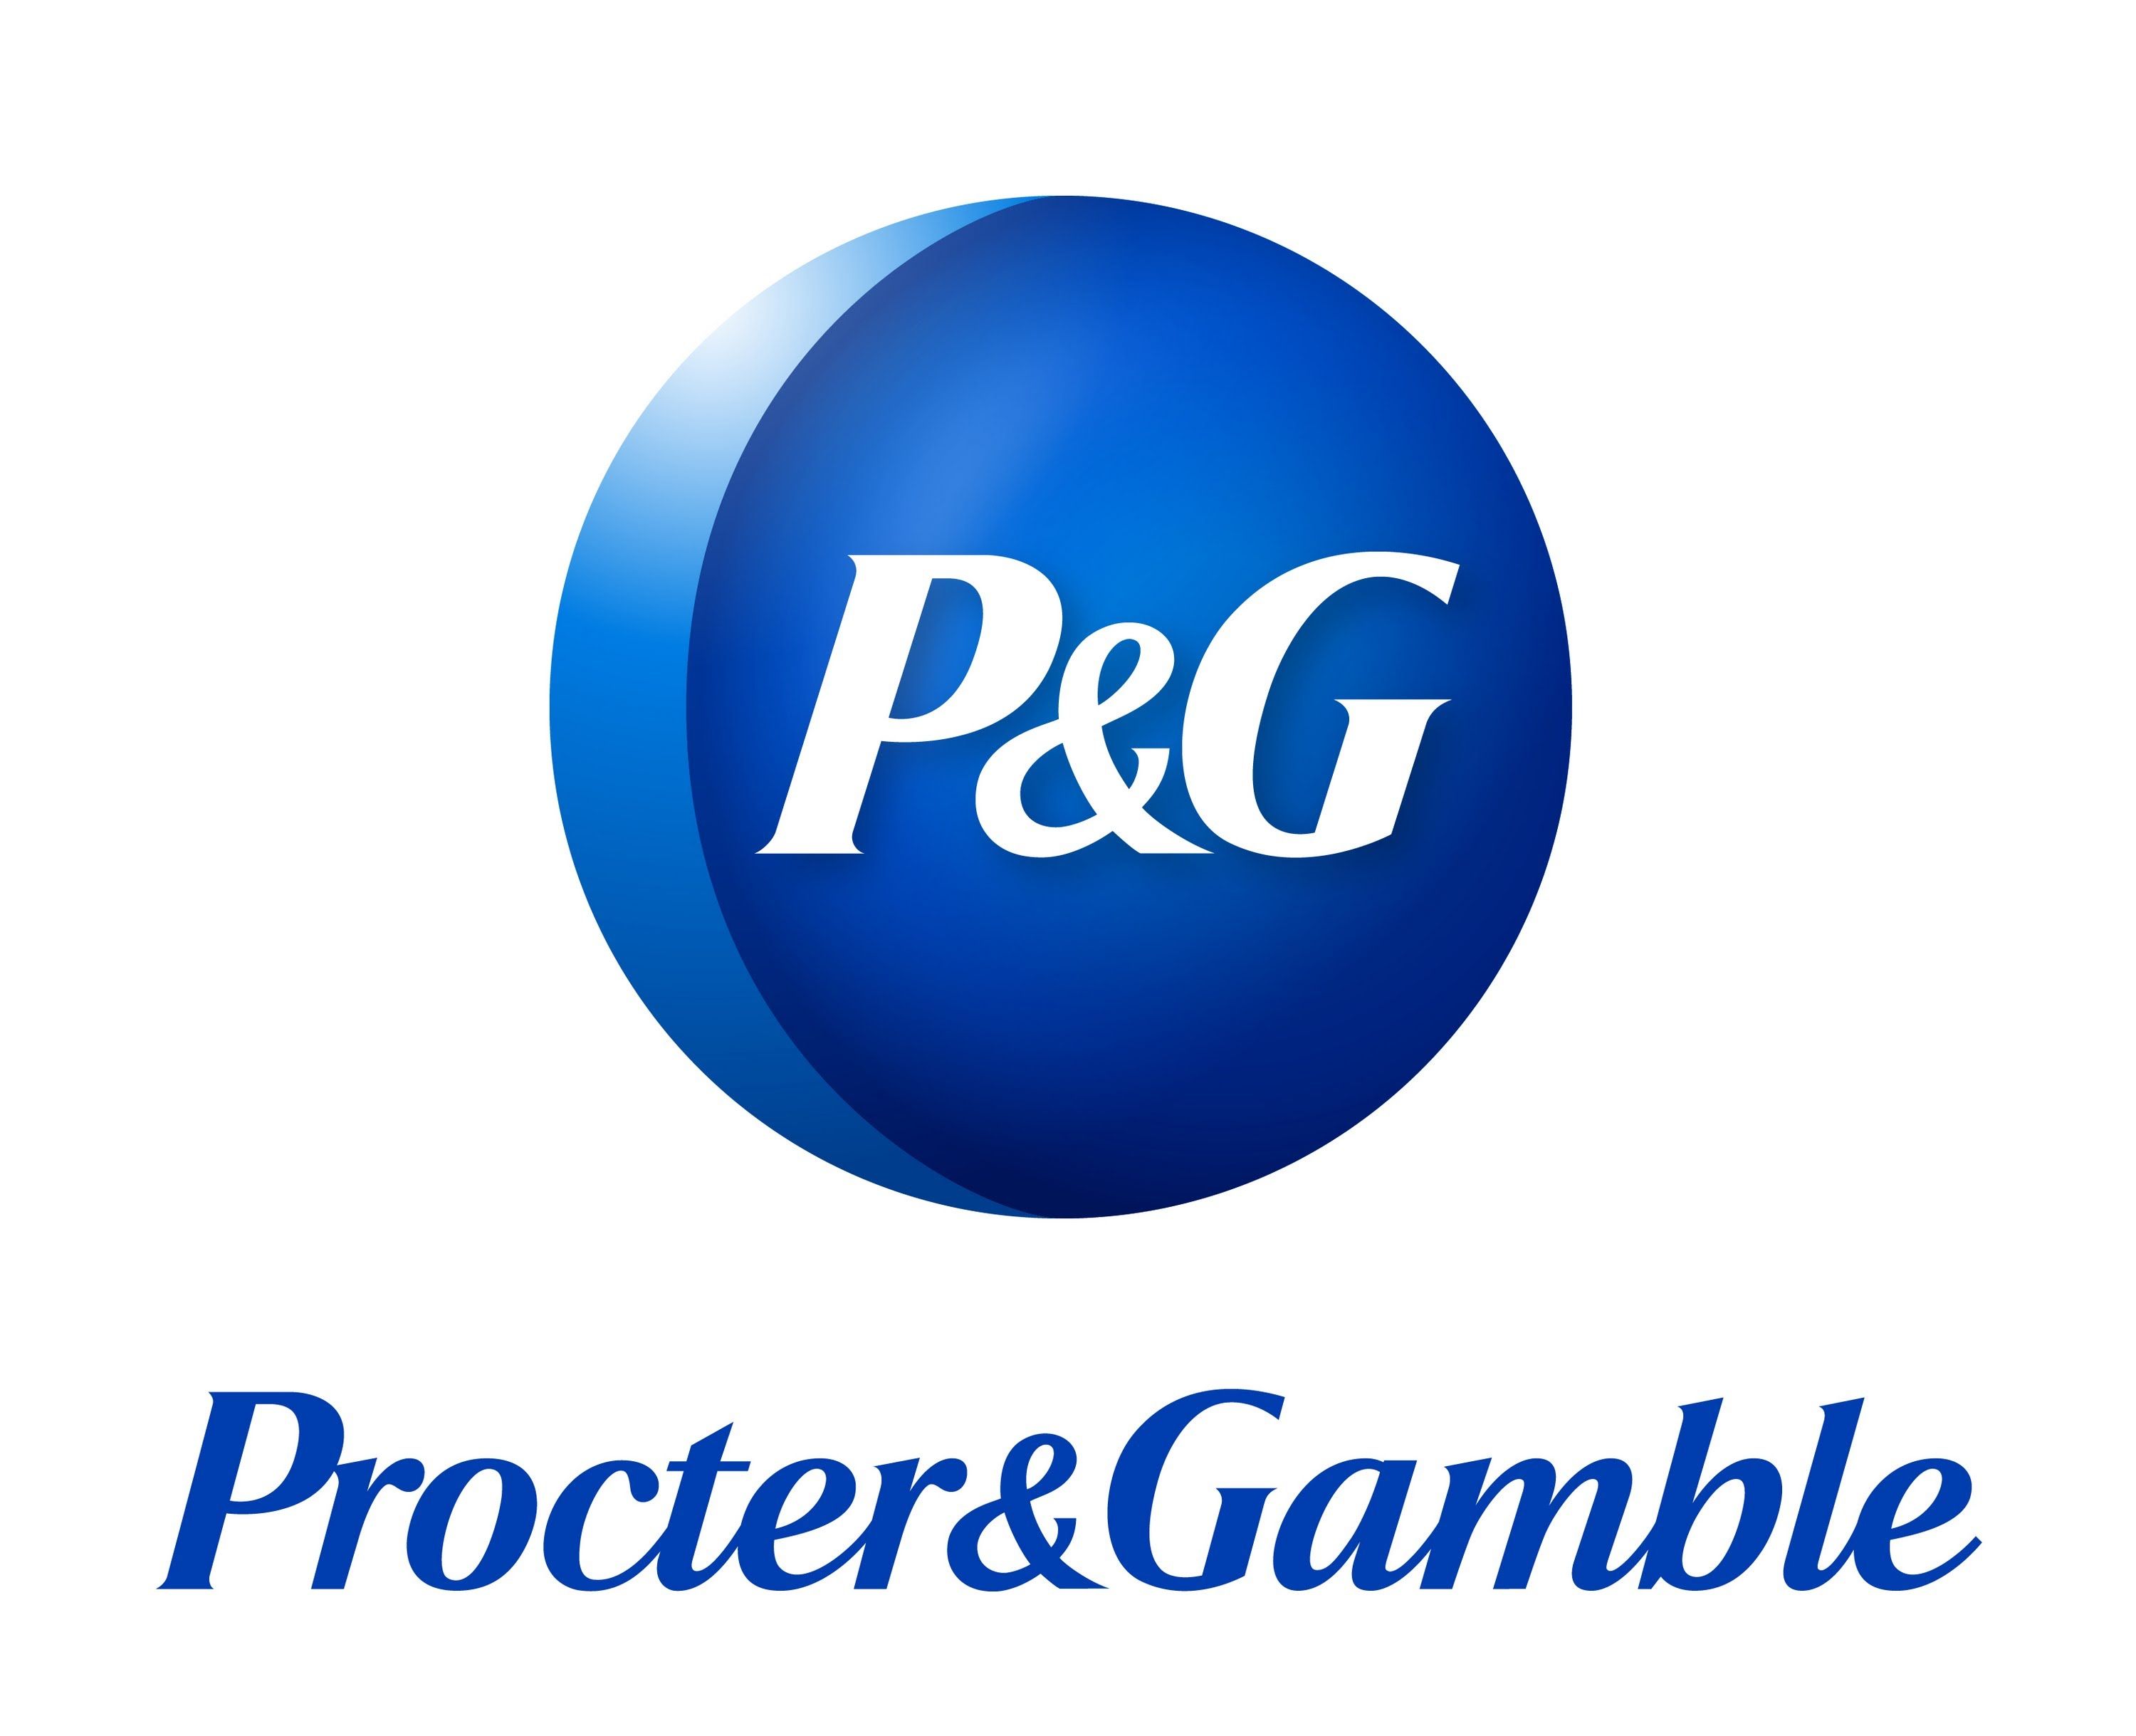 Procter and gamble Logos